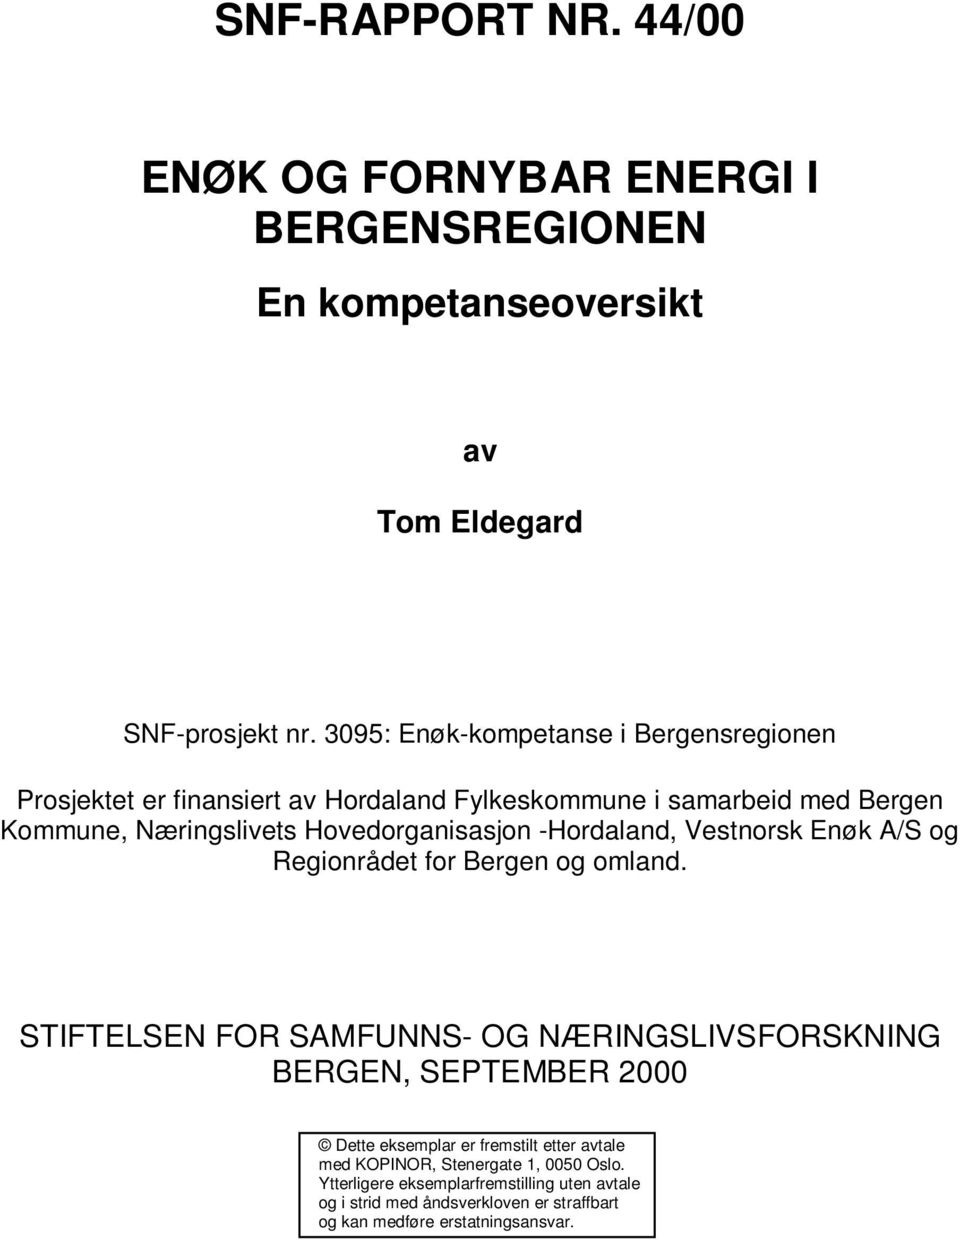 Hovedorganisasjon -Hordaland, Vestnorsk Enøk A/S og Regionrådet for Bergen og omland.